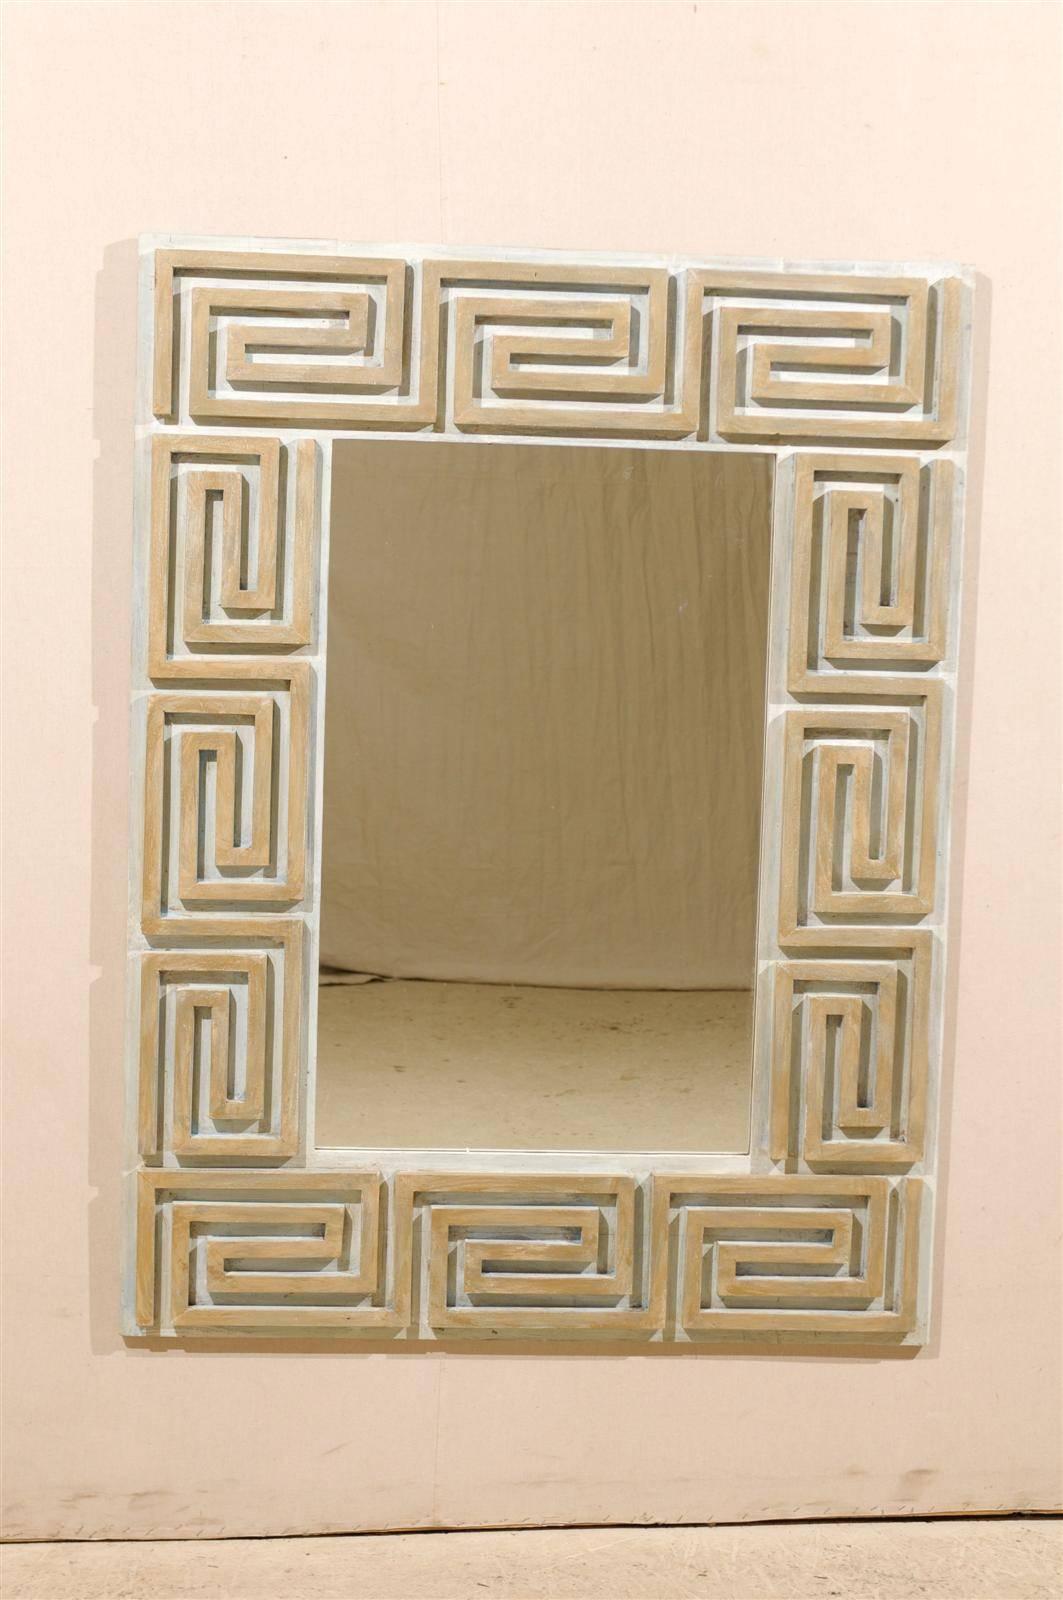 Ein Spiegel aus lackiertem Holz mit griechischem Schlüssel und klarem Glas. Dieser Spiegel zeigt ein sich wiederholendes griechisches Schlüsselmotiv in der Umrandung und ist aus altem Holz maßgefertigt. Die Einfassung dieses Spiegels ist eine